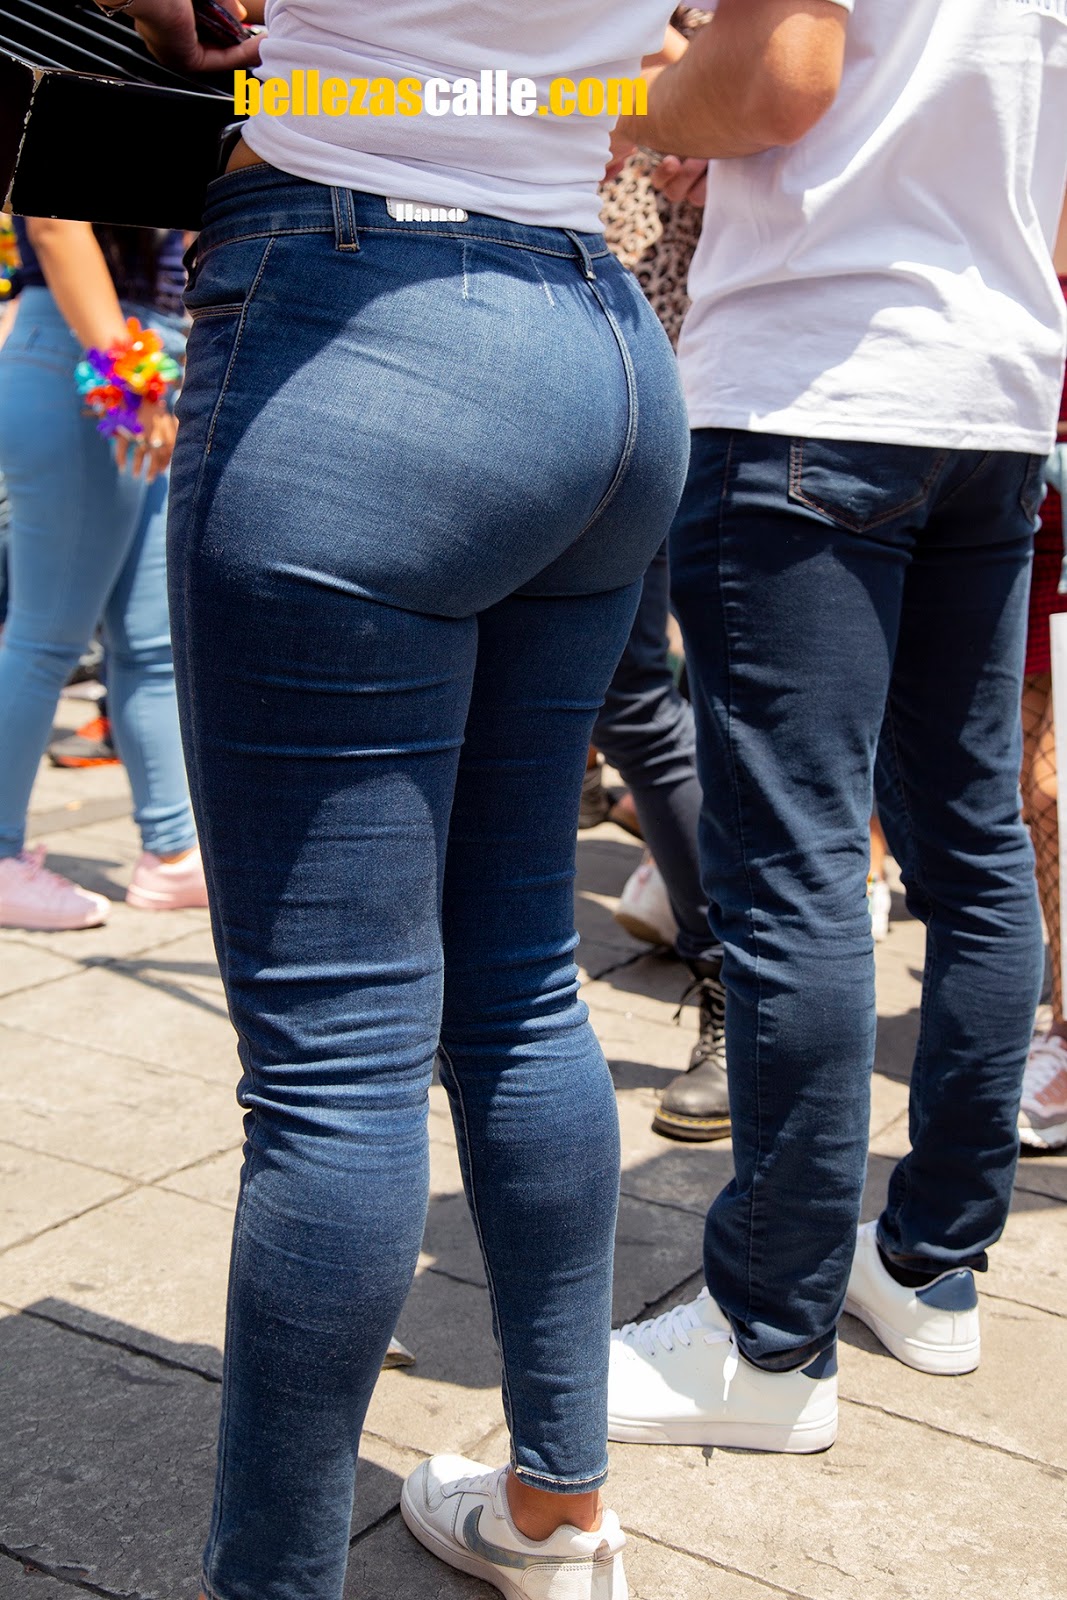 Mujeres nalgonas y hermosas en jeans apretados.